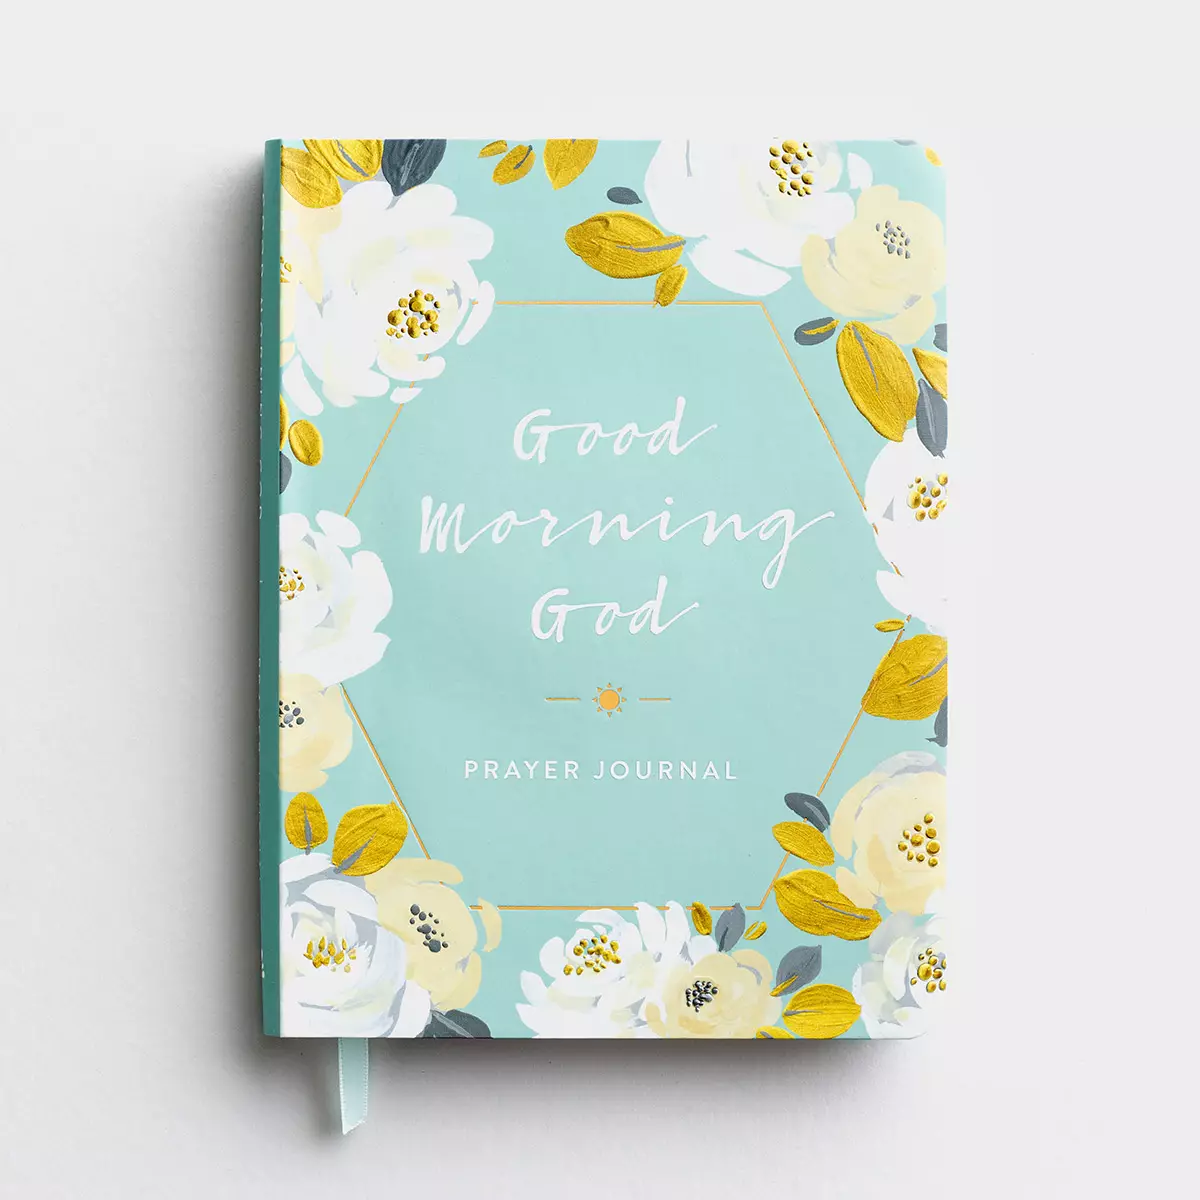 Good Morning God - Prayer Journal